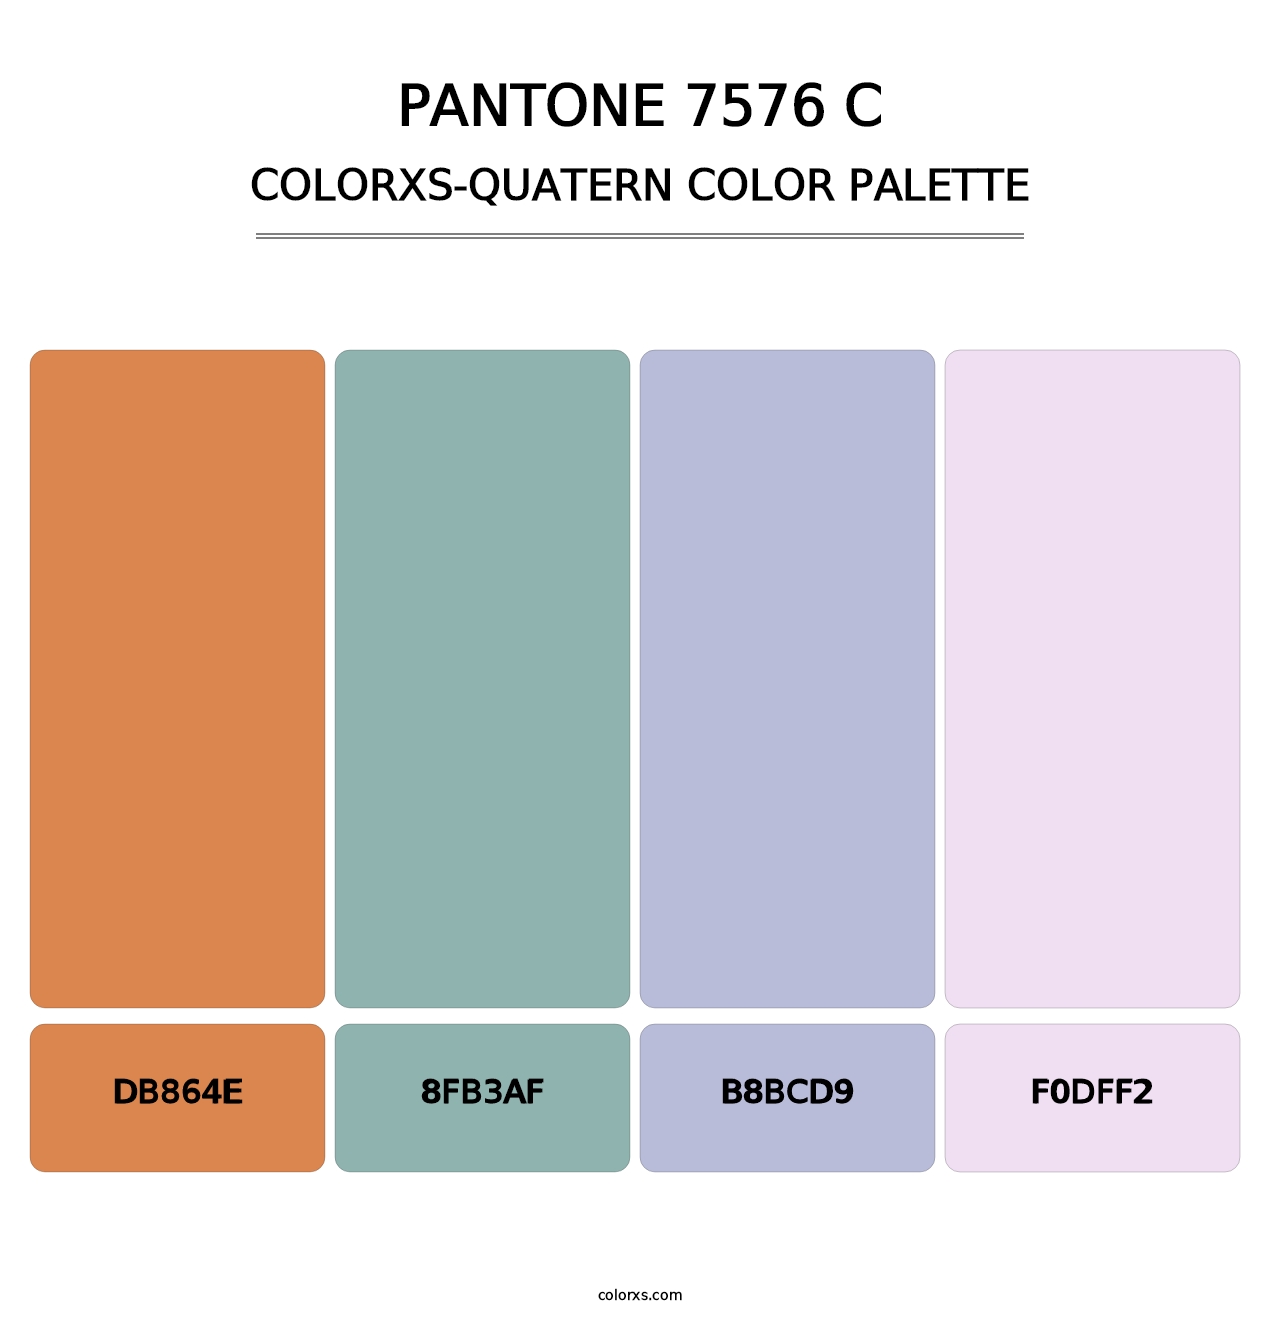 PANTONE 7576 C - Colorxs Quatern Palette